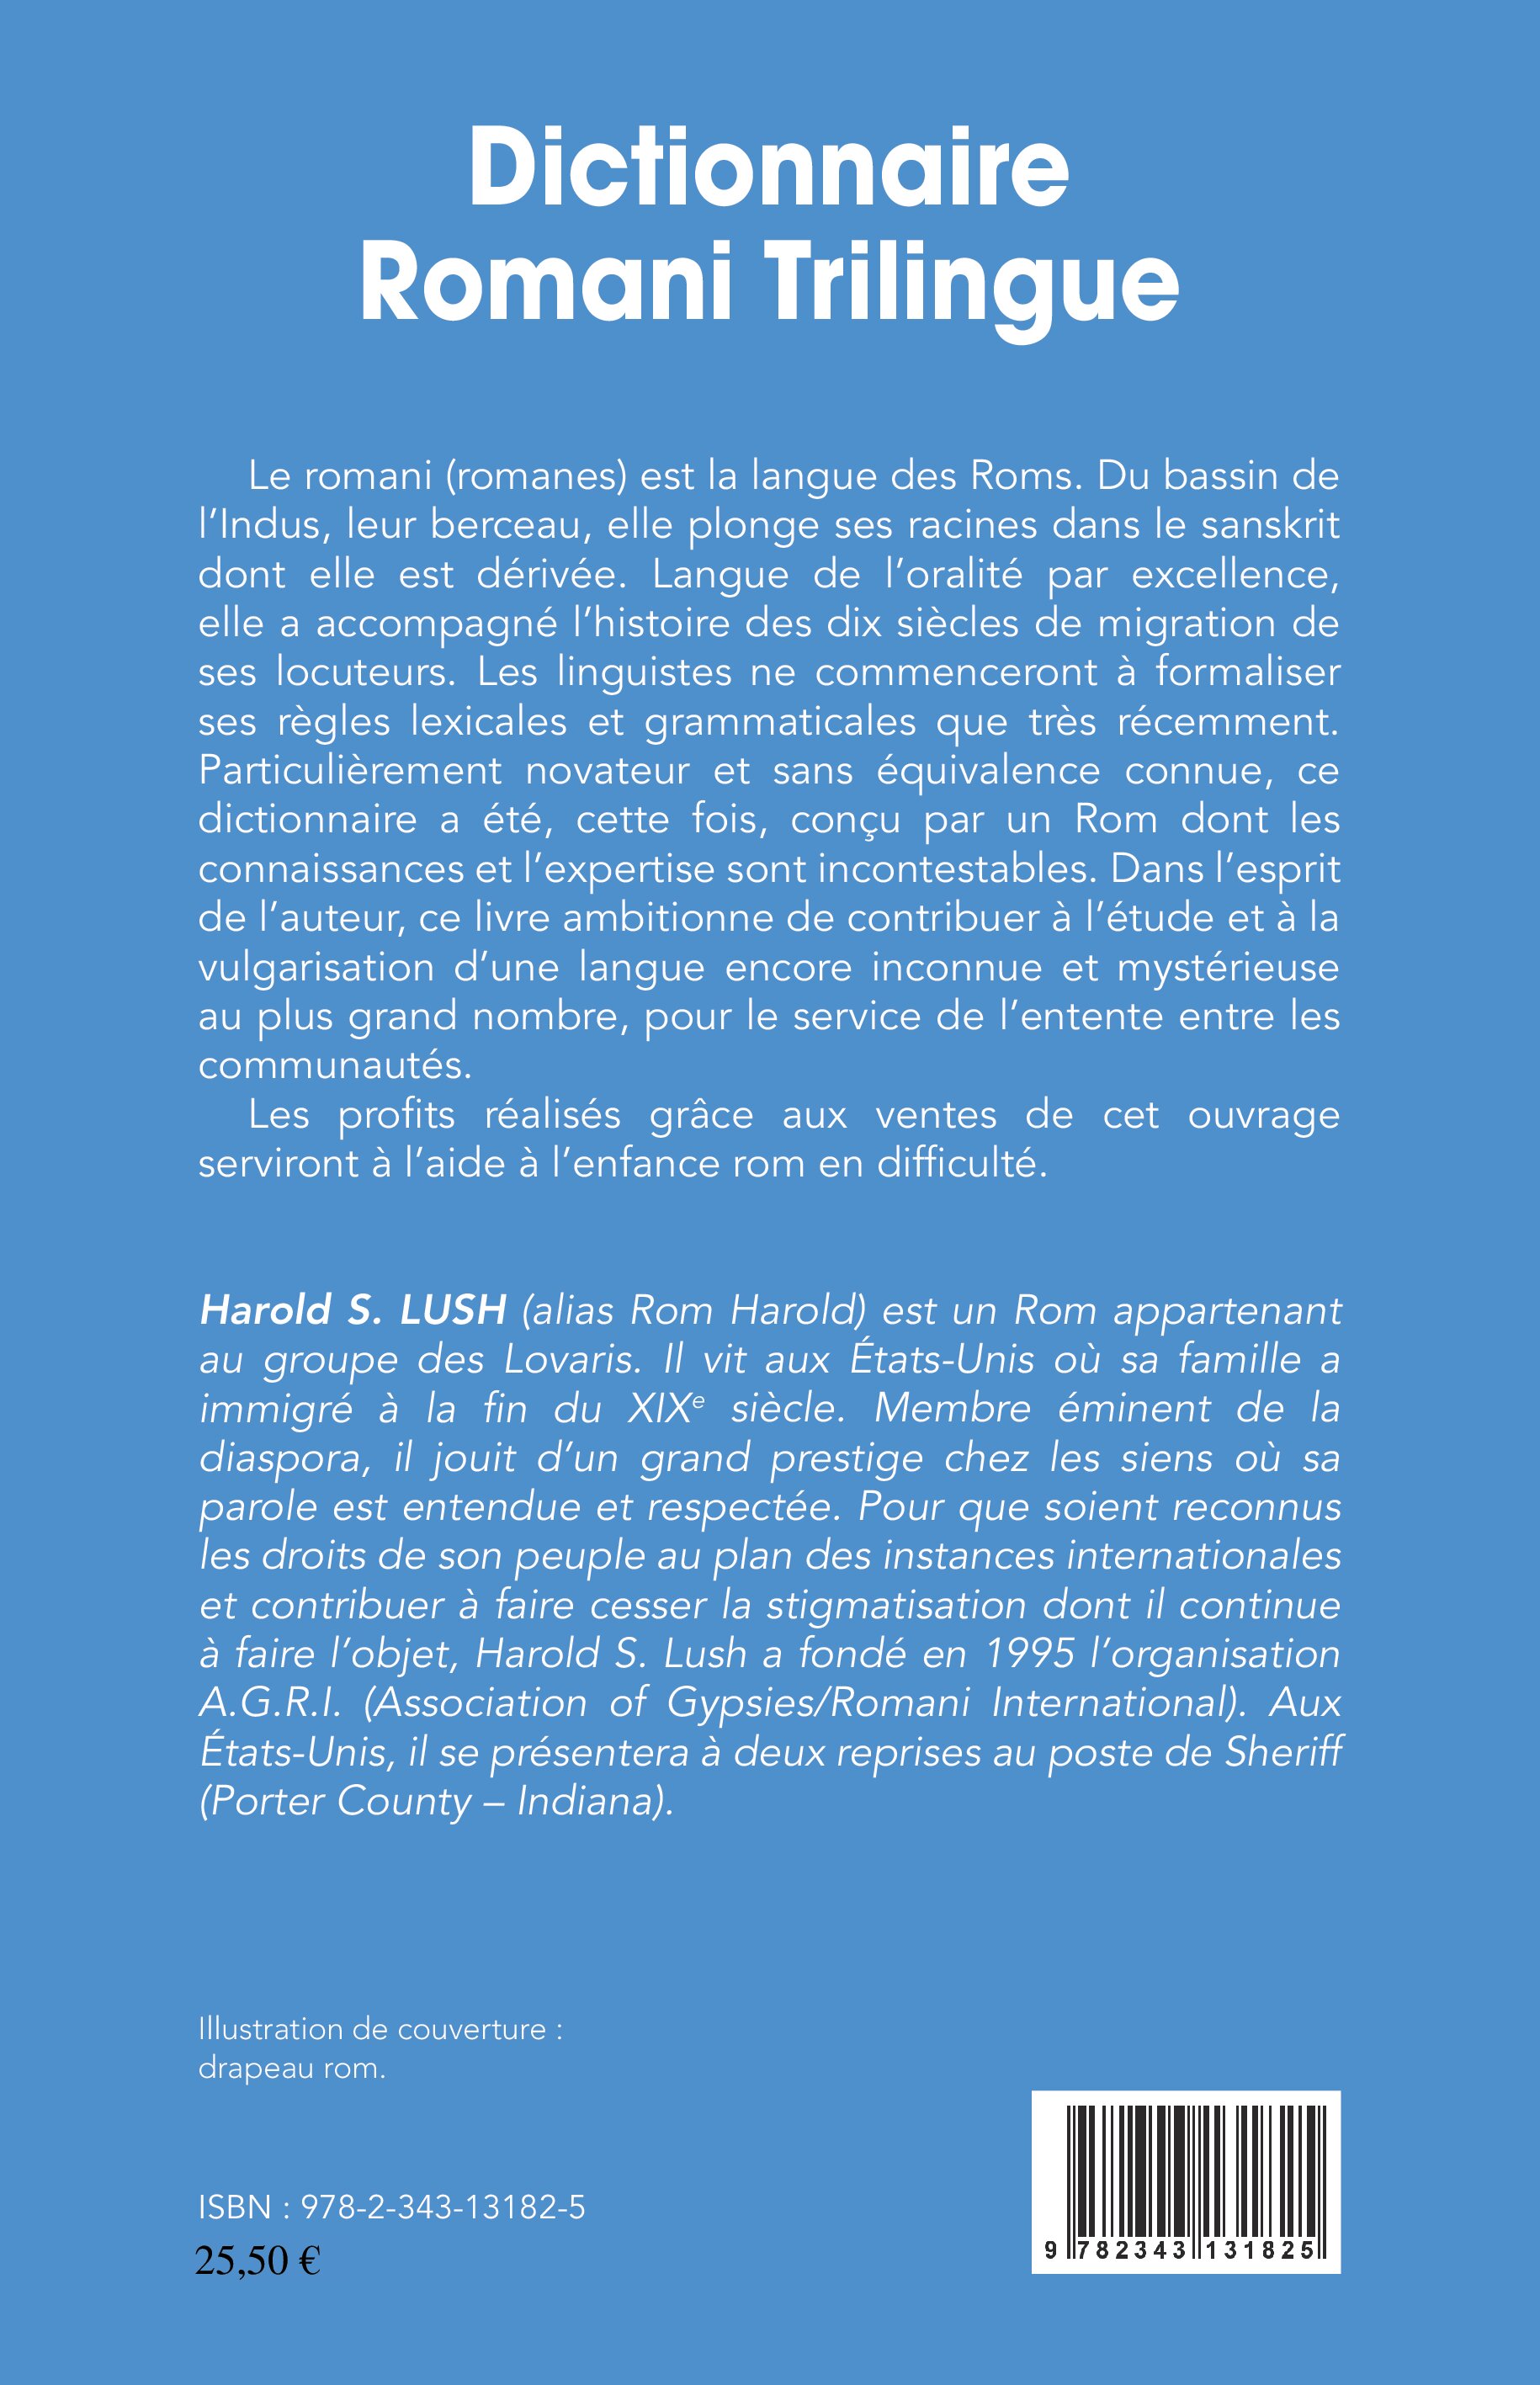 Dictionnaire romani trilingue : romani - français - anglais Harold S. Lush et Félix Monget 9782343131825v